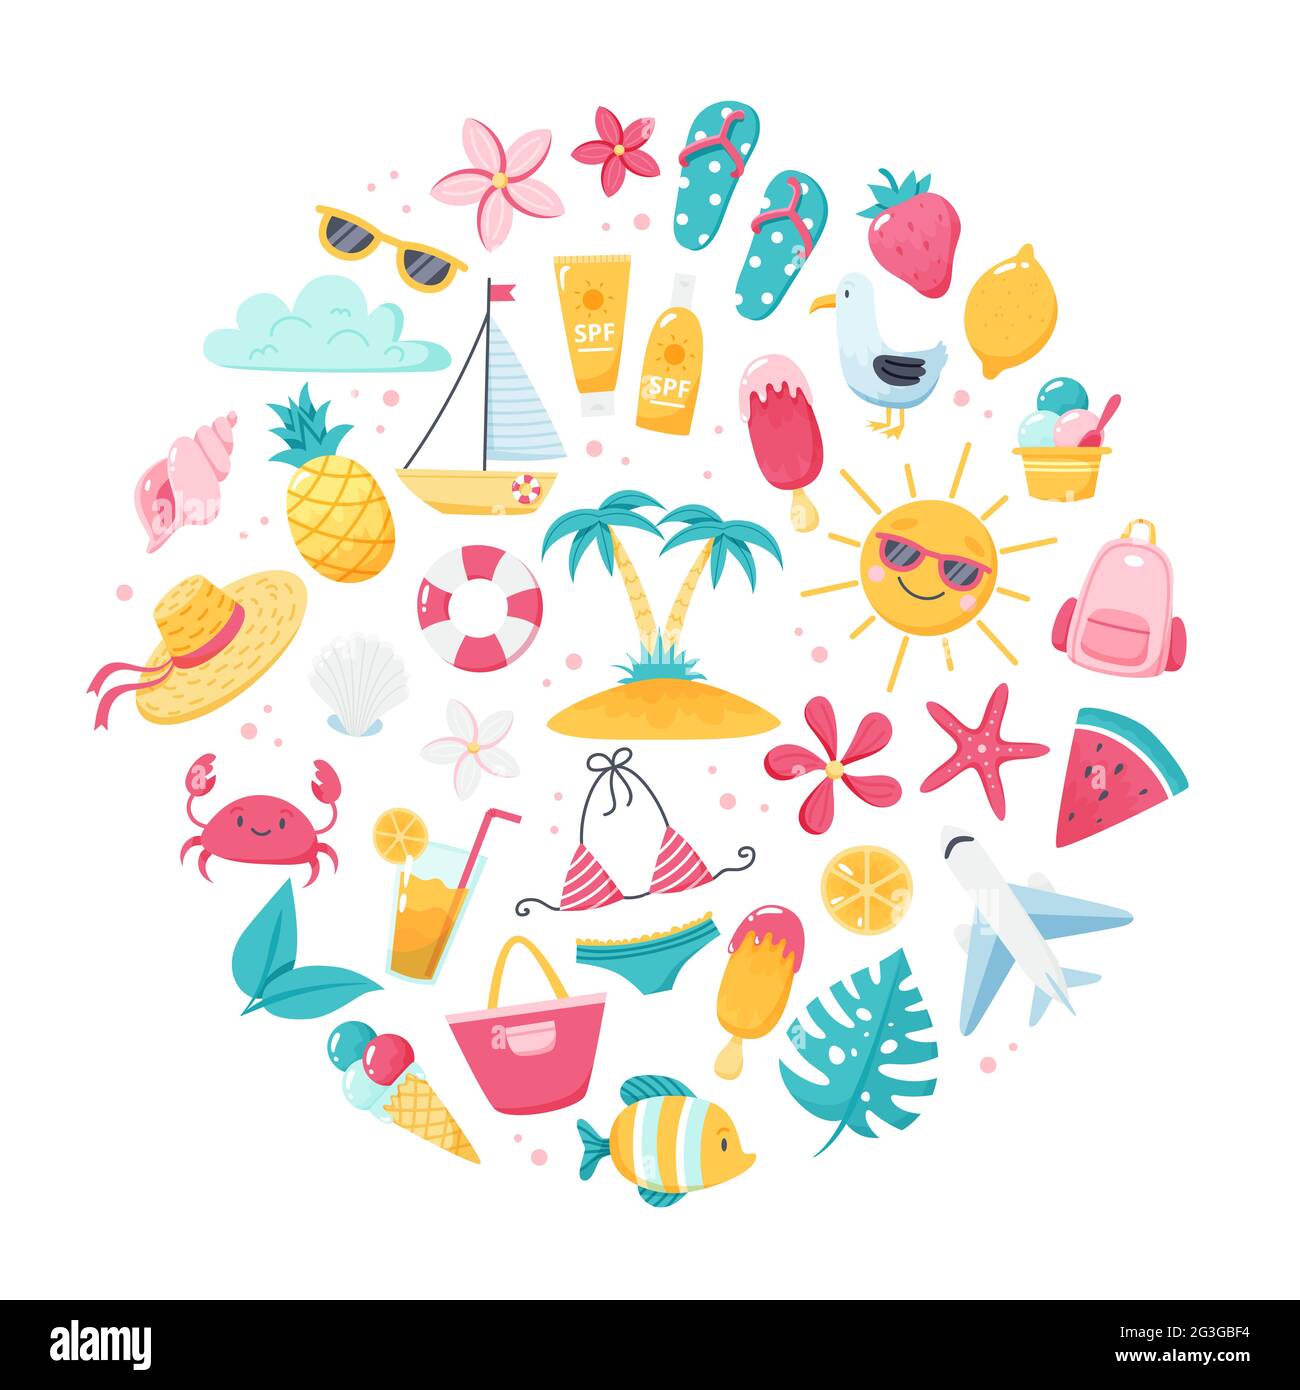 Sommer-Set mit niedlichem Bikini mit Strandelementen, Flip-Flops, Früchten, Blumen und Palmen. Handgezeichnete flache Cartoon-Elemente. Vektorgrafik Stock Vektor